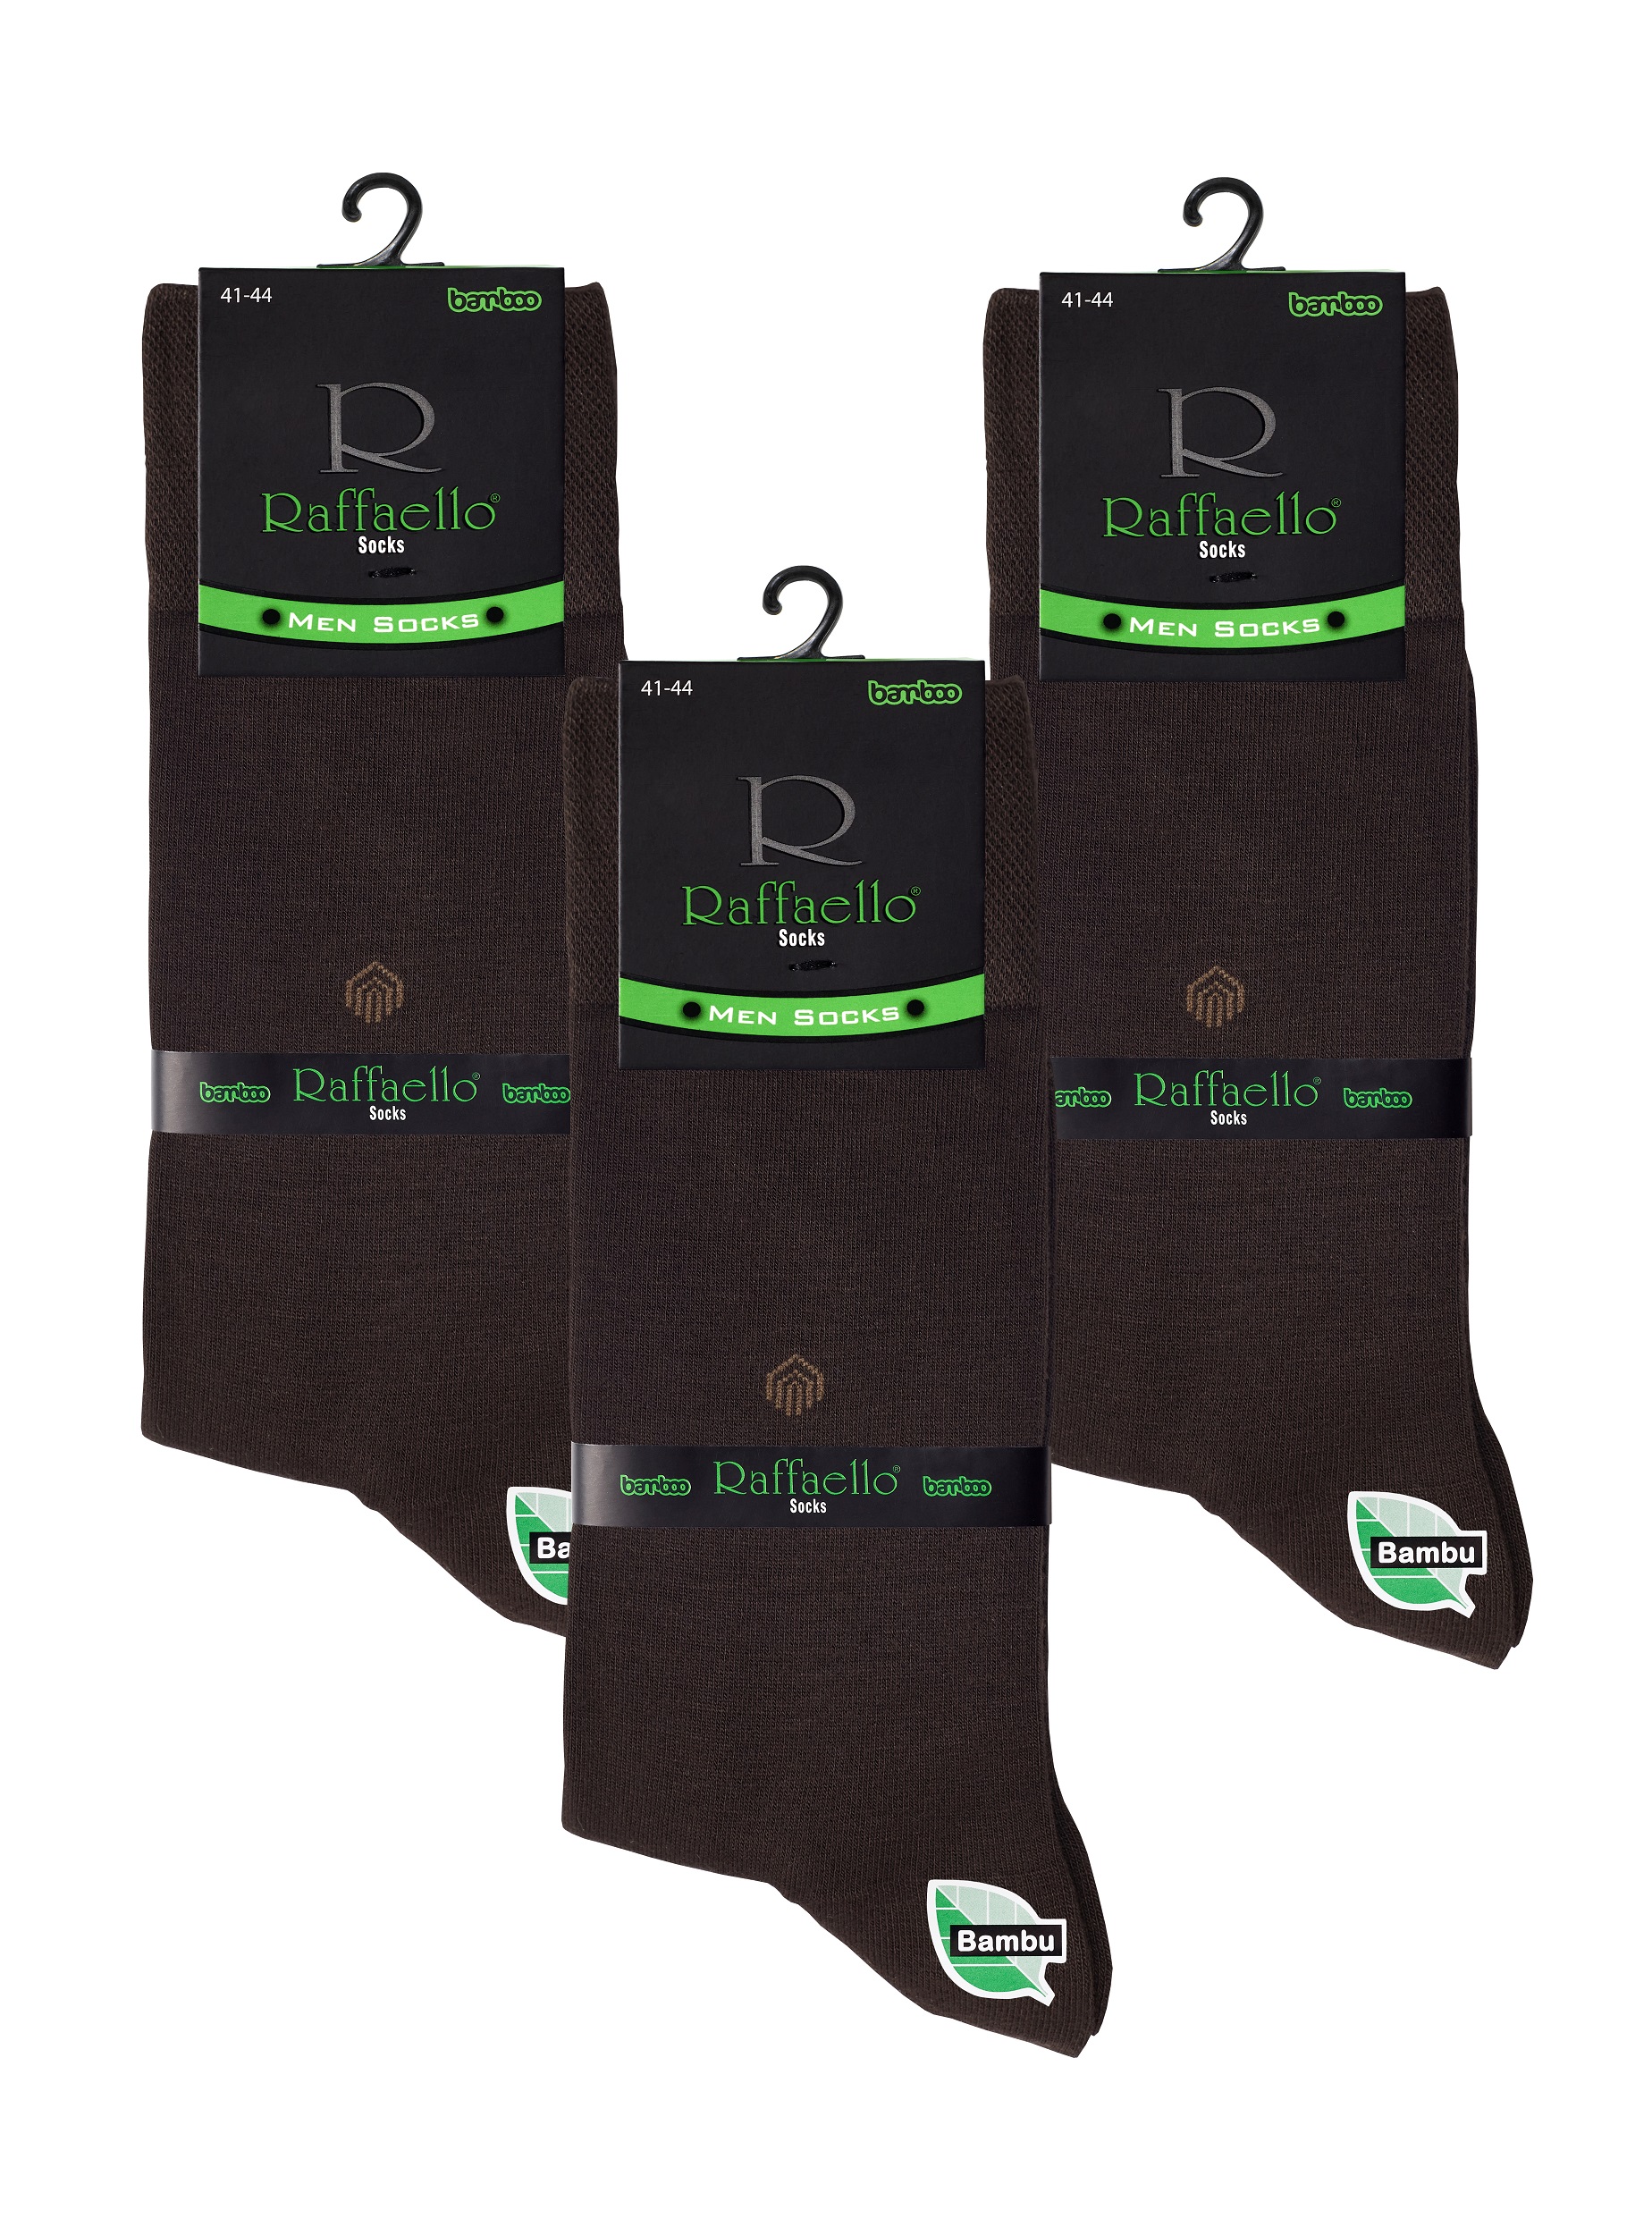 Комплект носков мужских Raffaello #004 из бамбука теплые набор 3 коричневых 41-44, 3 пары